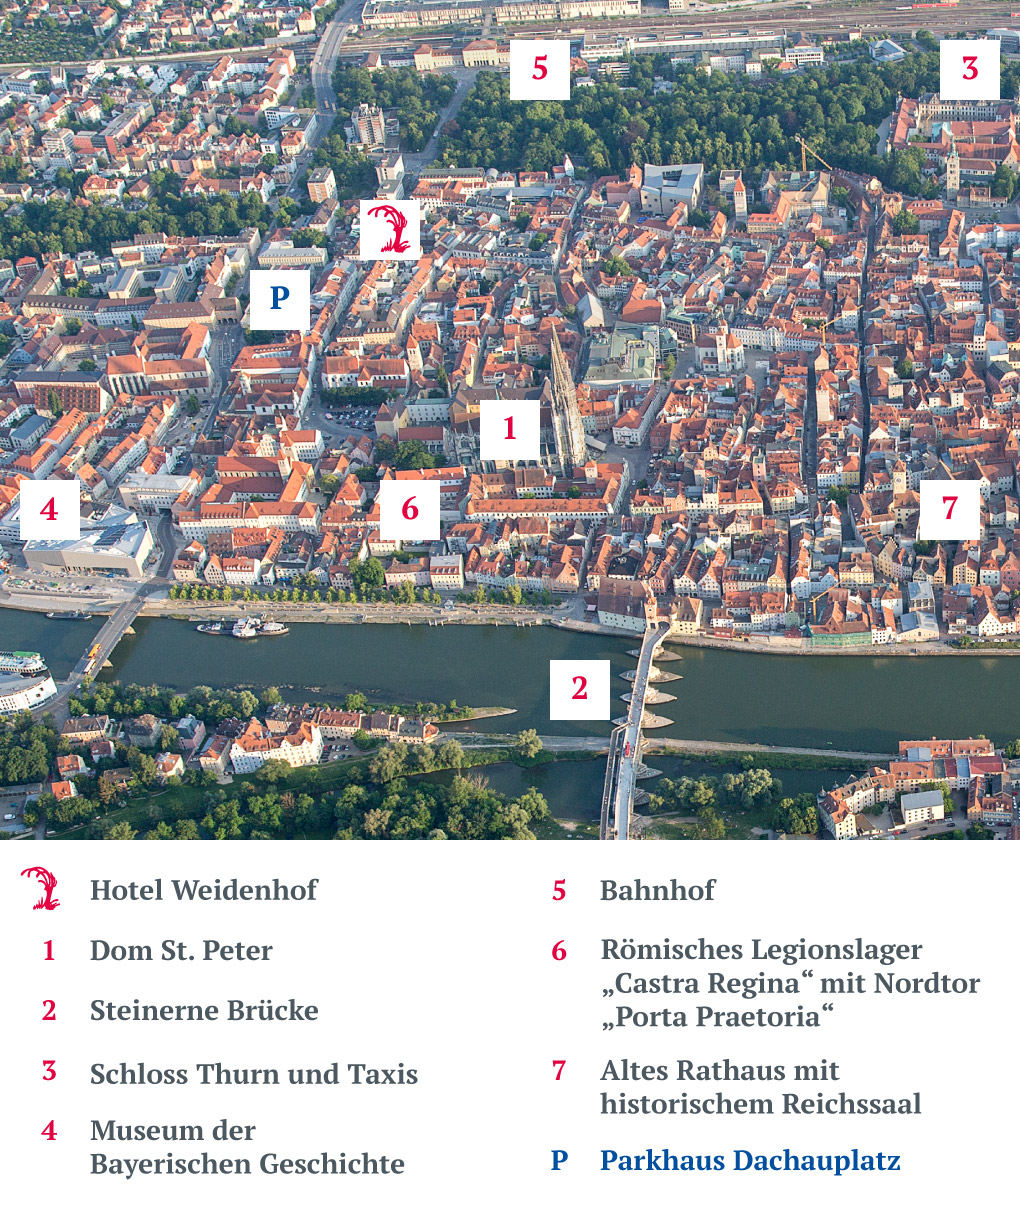 Lage und Umgebung des Hotels Weidenhof in Regensburg